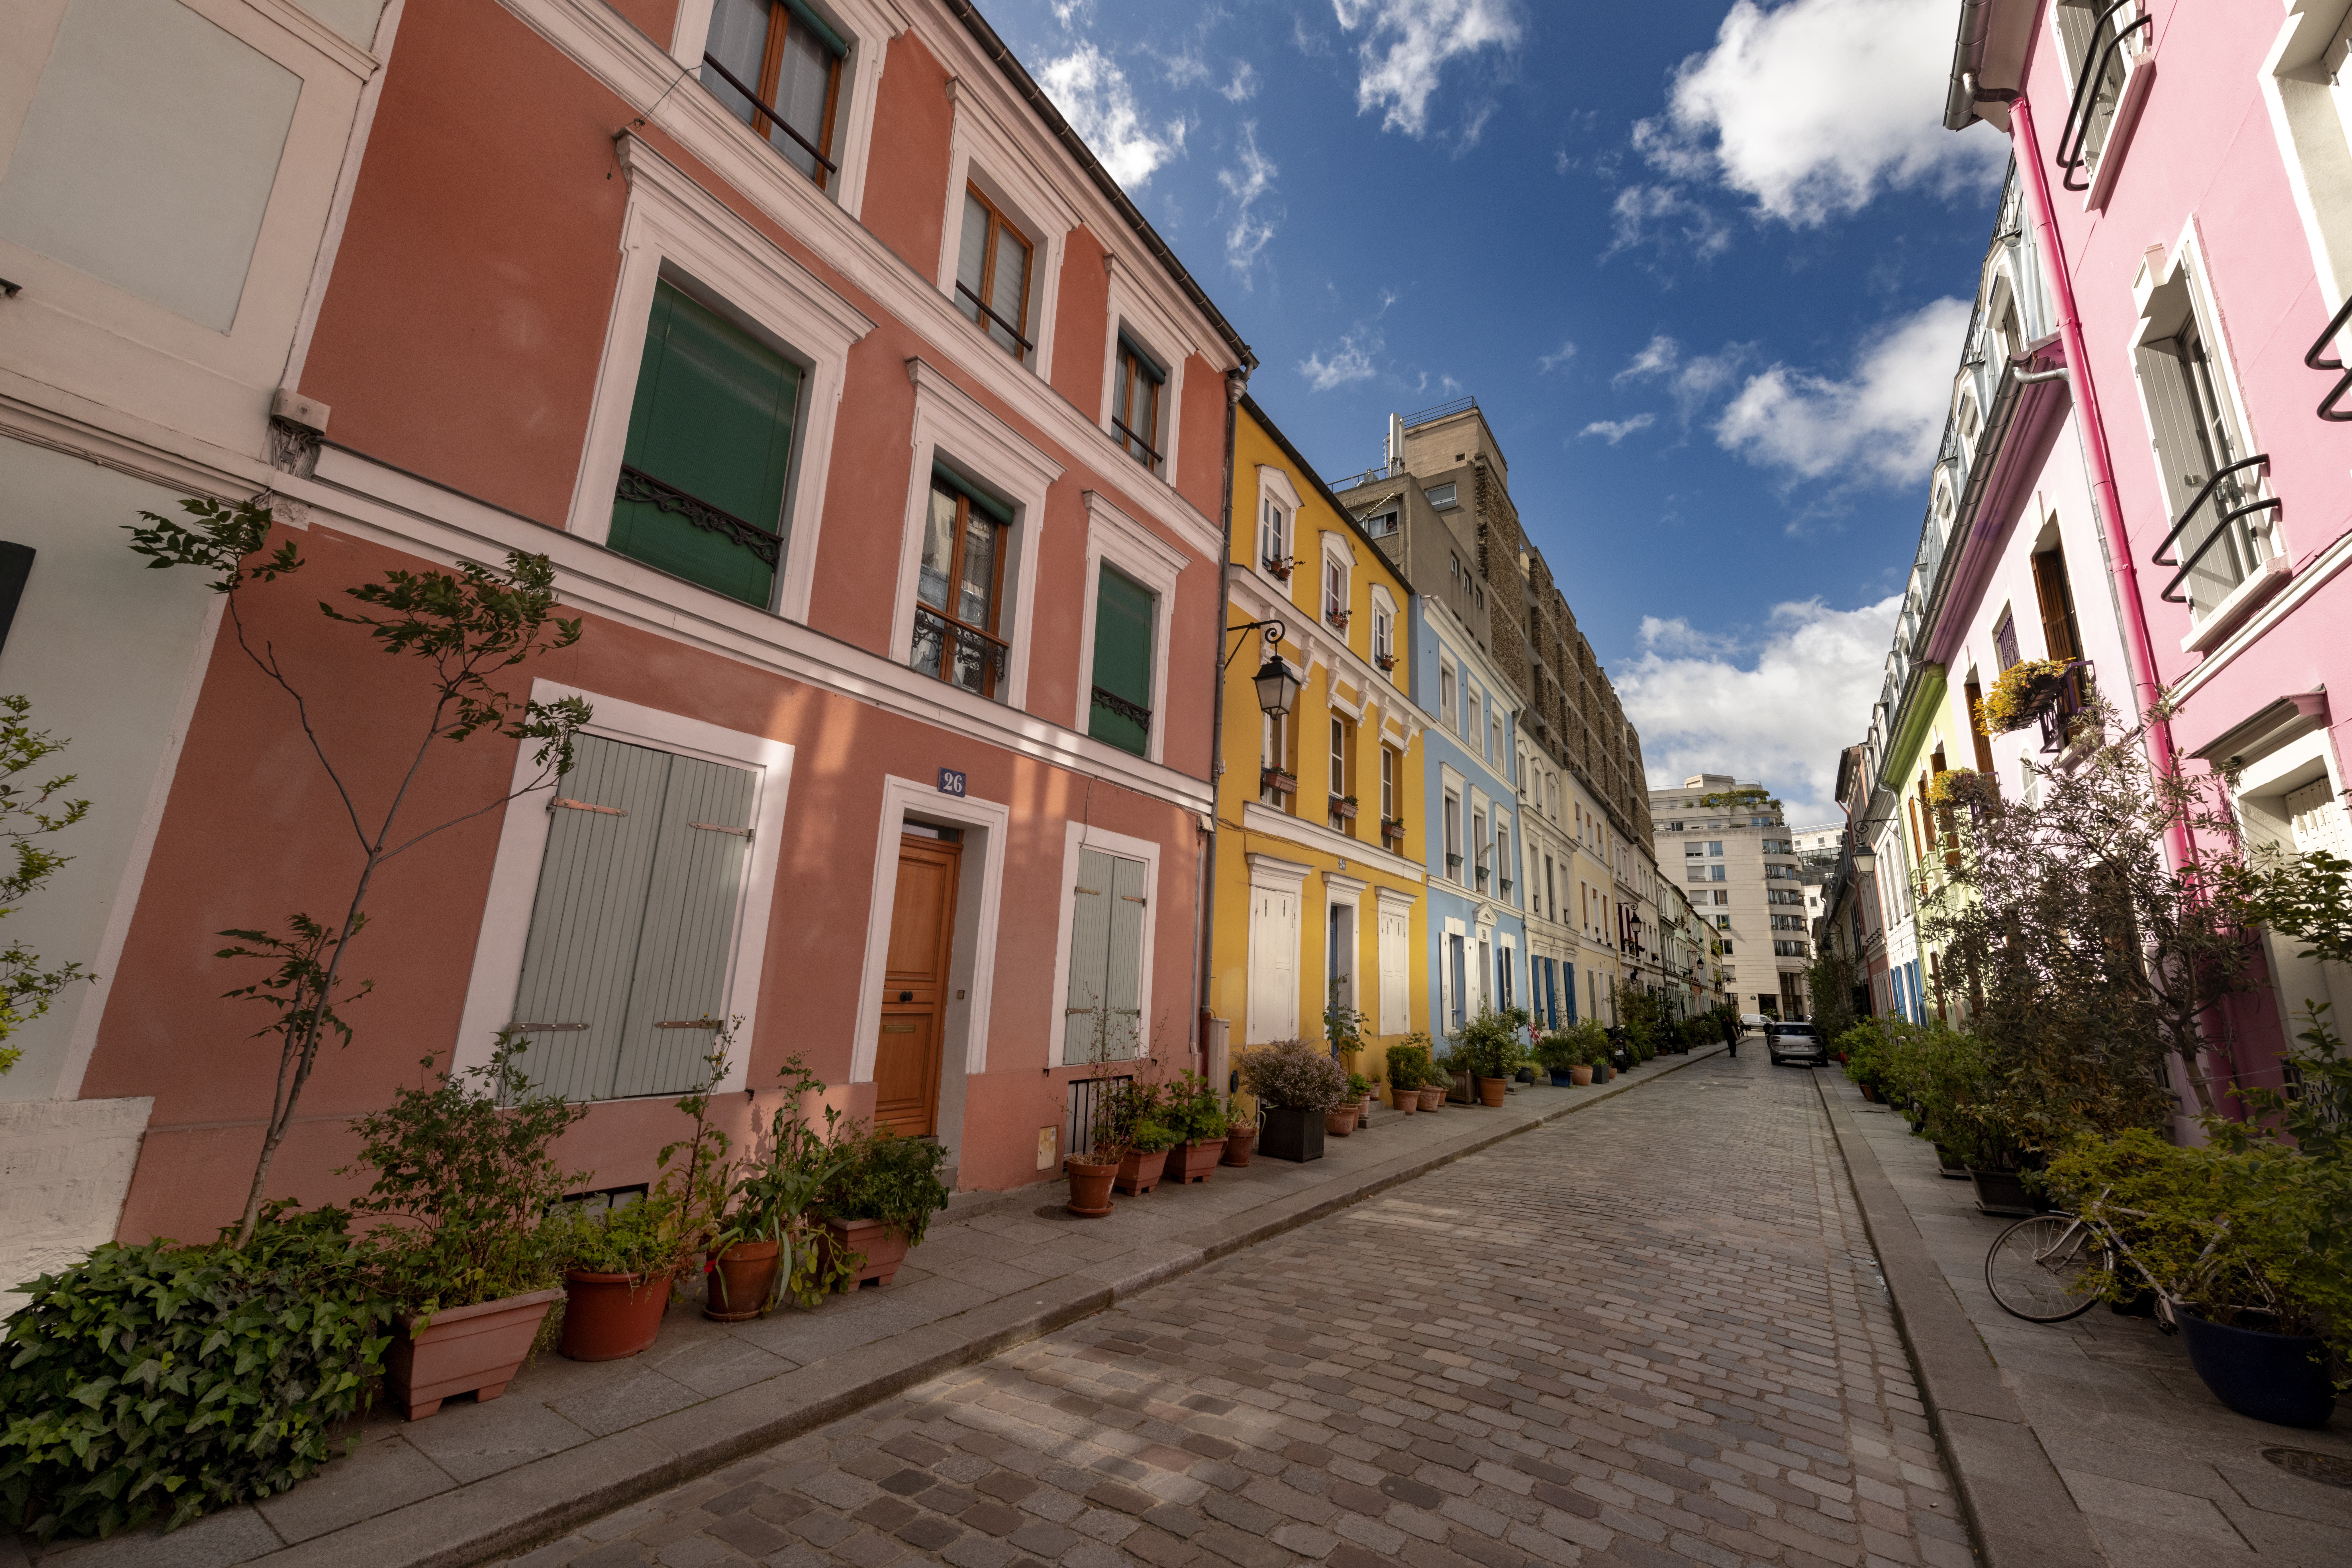 <p>Париж, Франция</p>

<p>Тази&nbsp;улица в Париж, наречена на министъра на правосъдието, може да се похвали с изобилие от красиво боядисани къщи, много саксии с растения и свеж вид.</p>